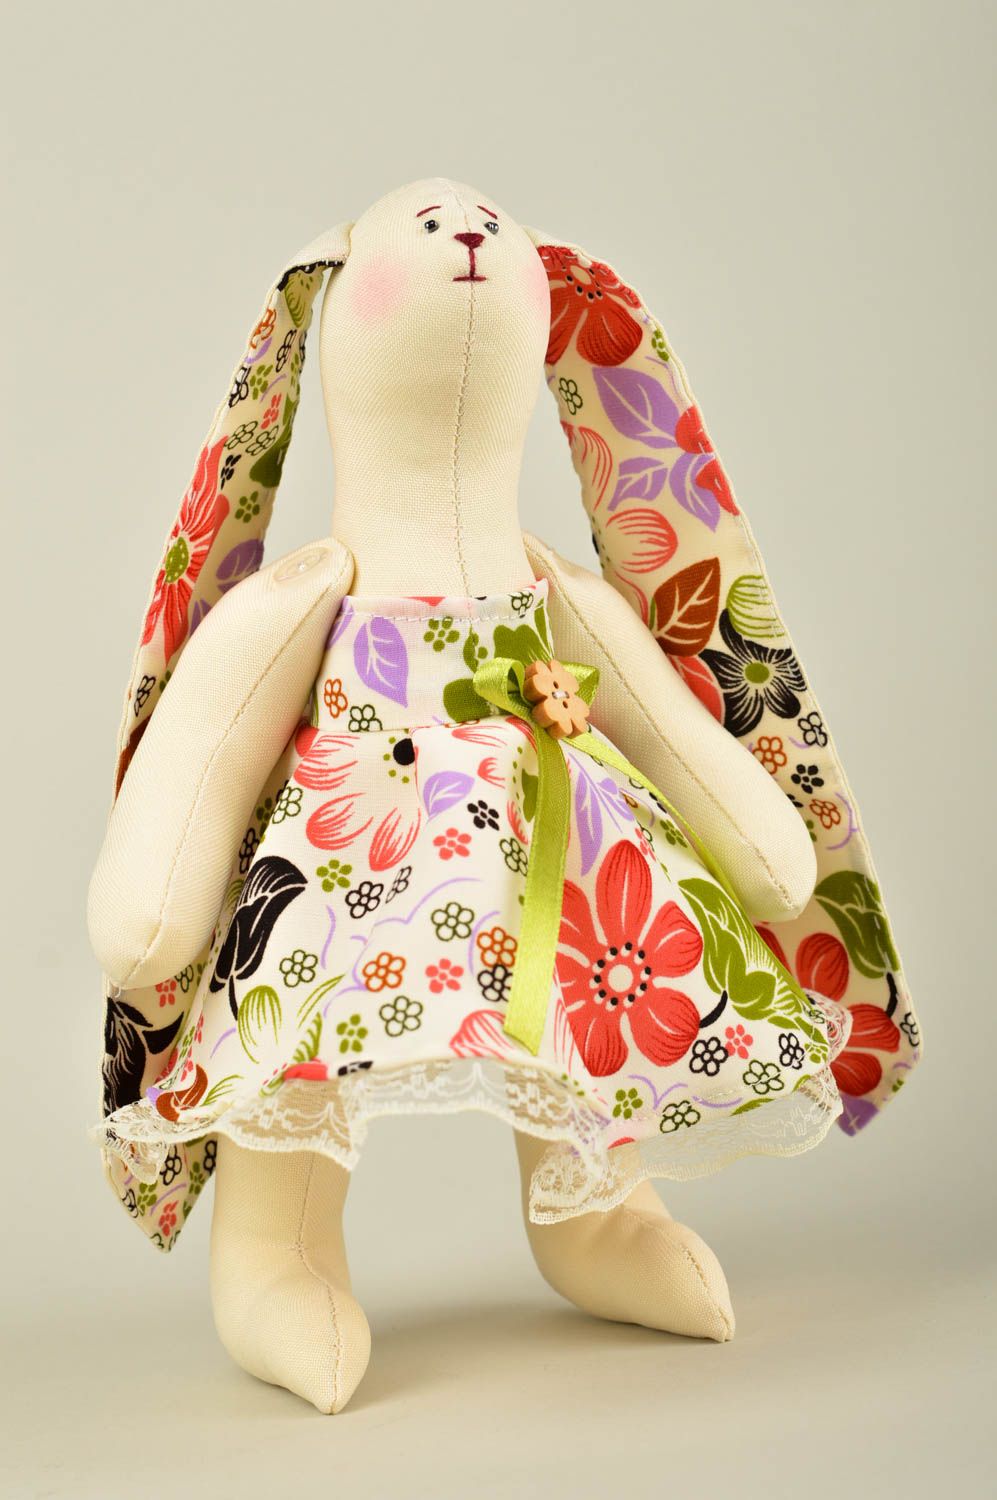 Игрушка заяц в платье ручной работы авторская игрушка стильный подарок фото 1